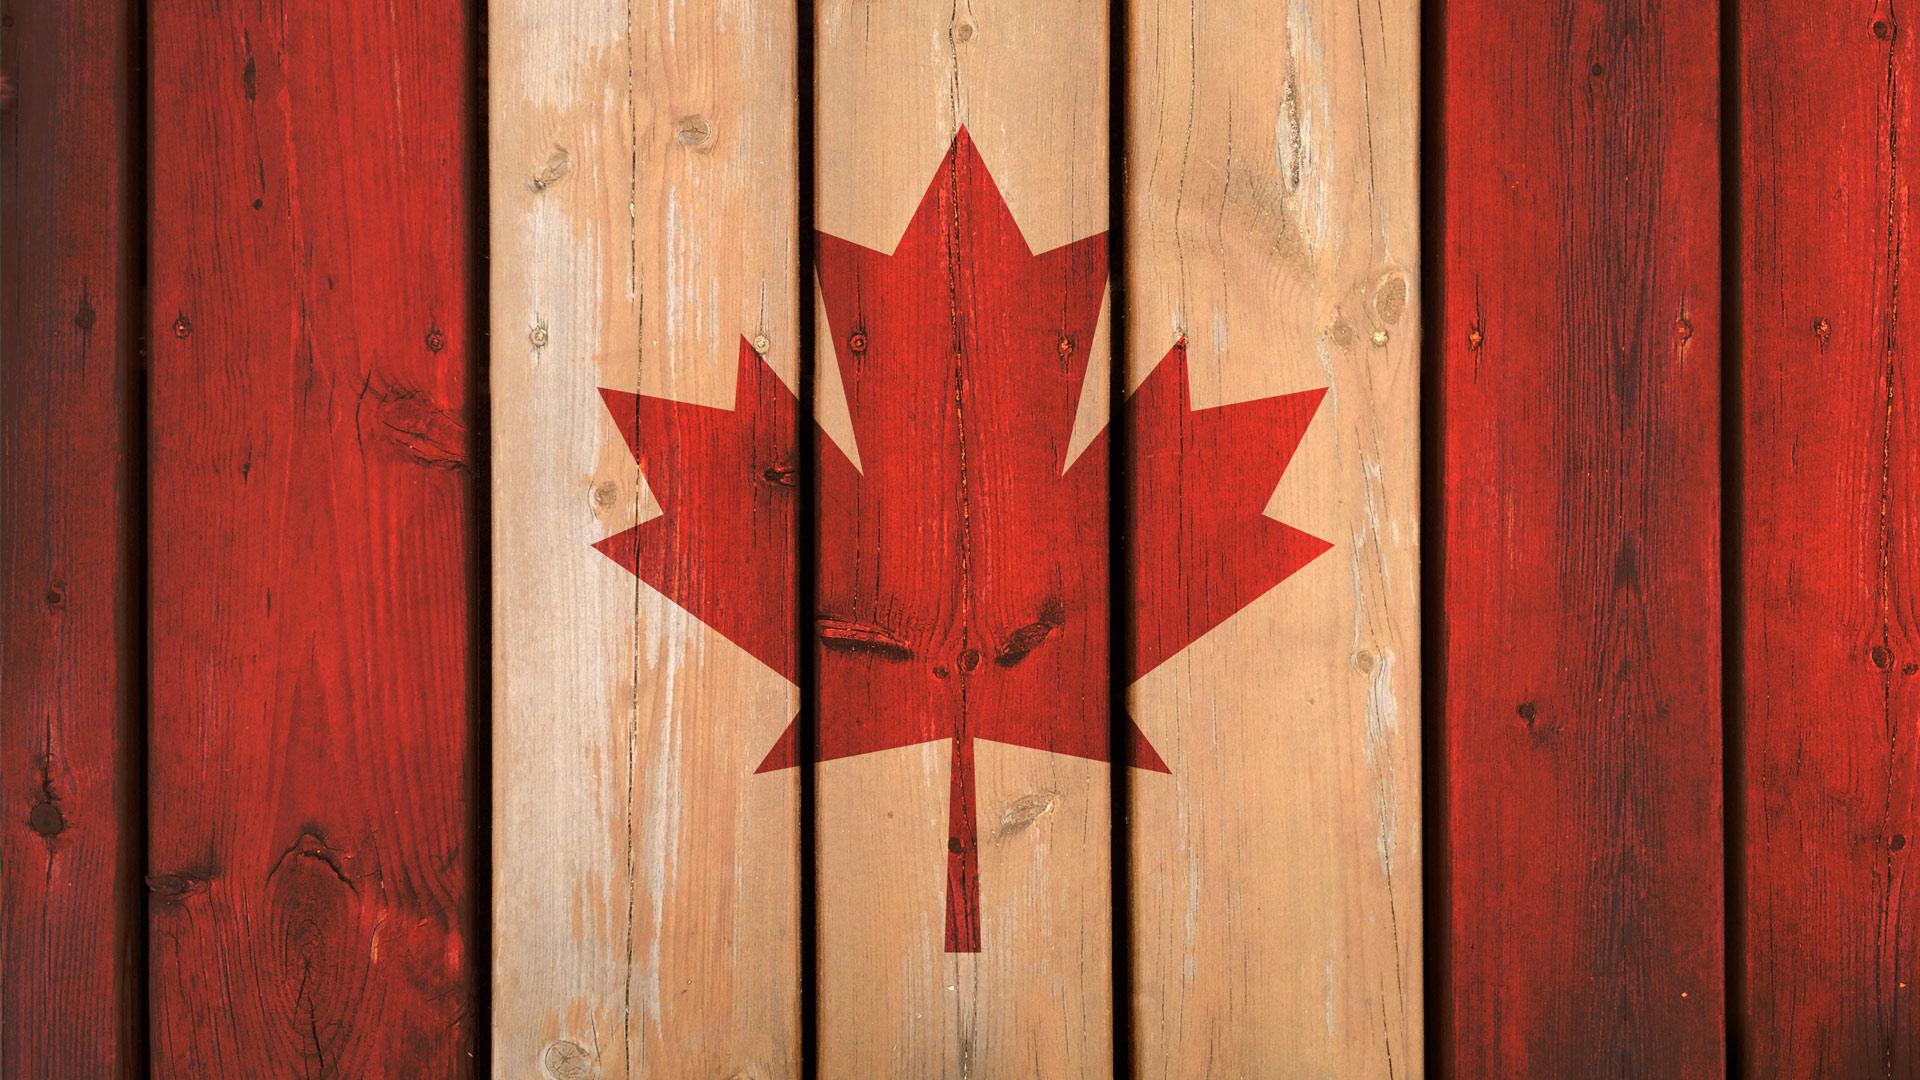 [47+] Canadian Flag Wallpaper Images - WallpaperSafari